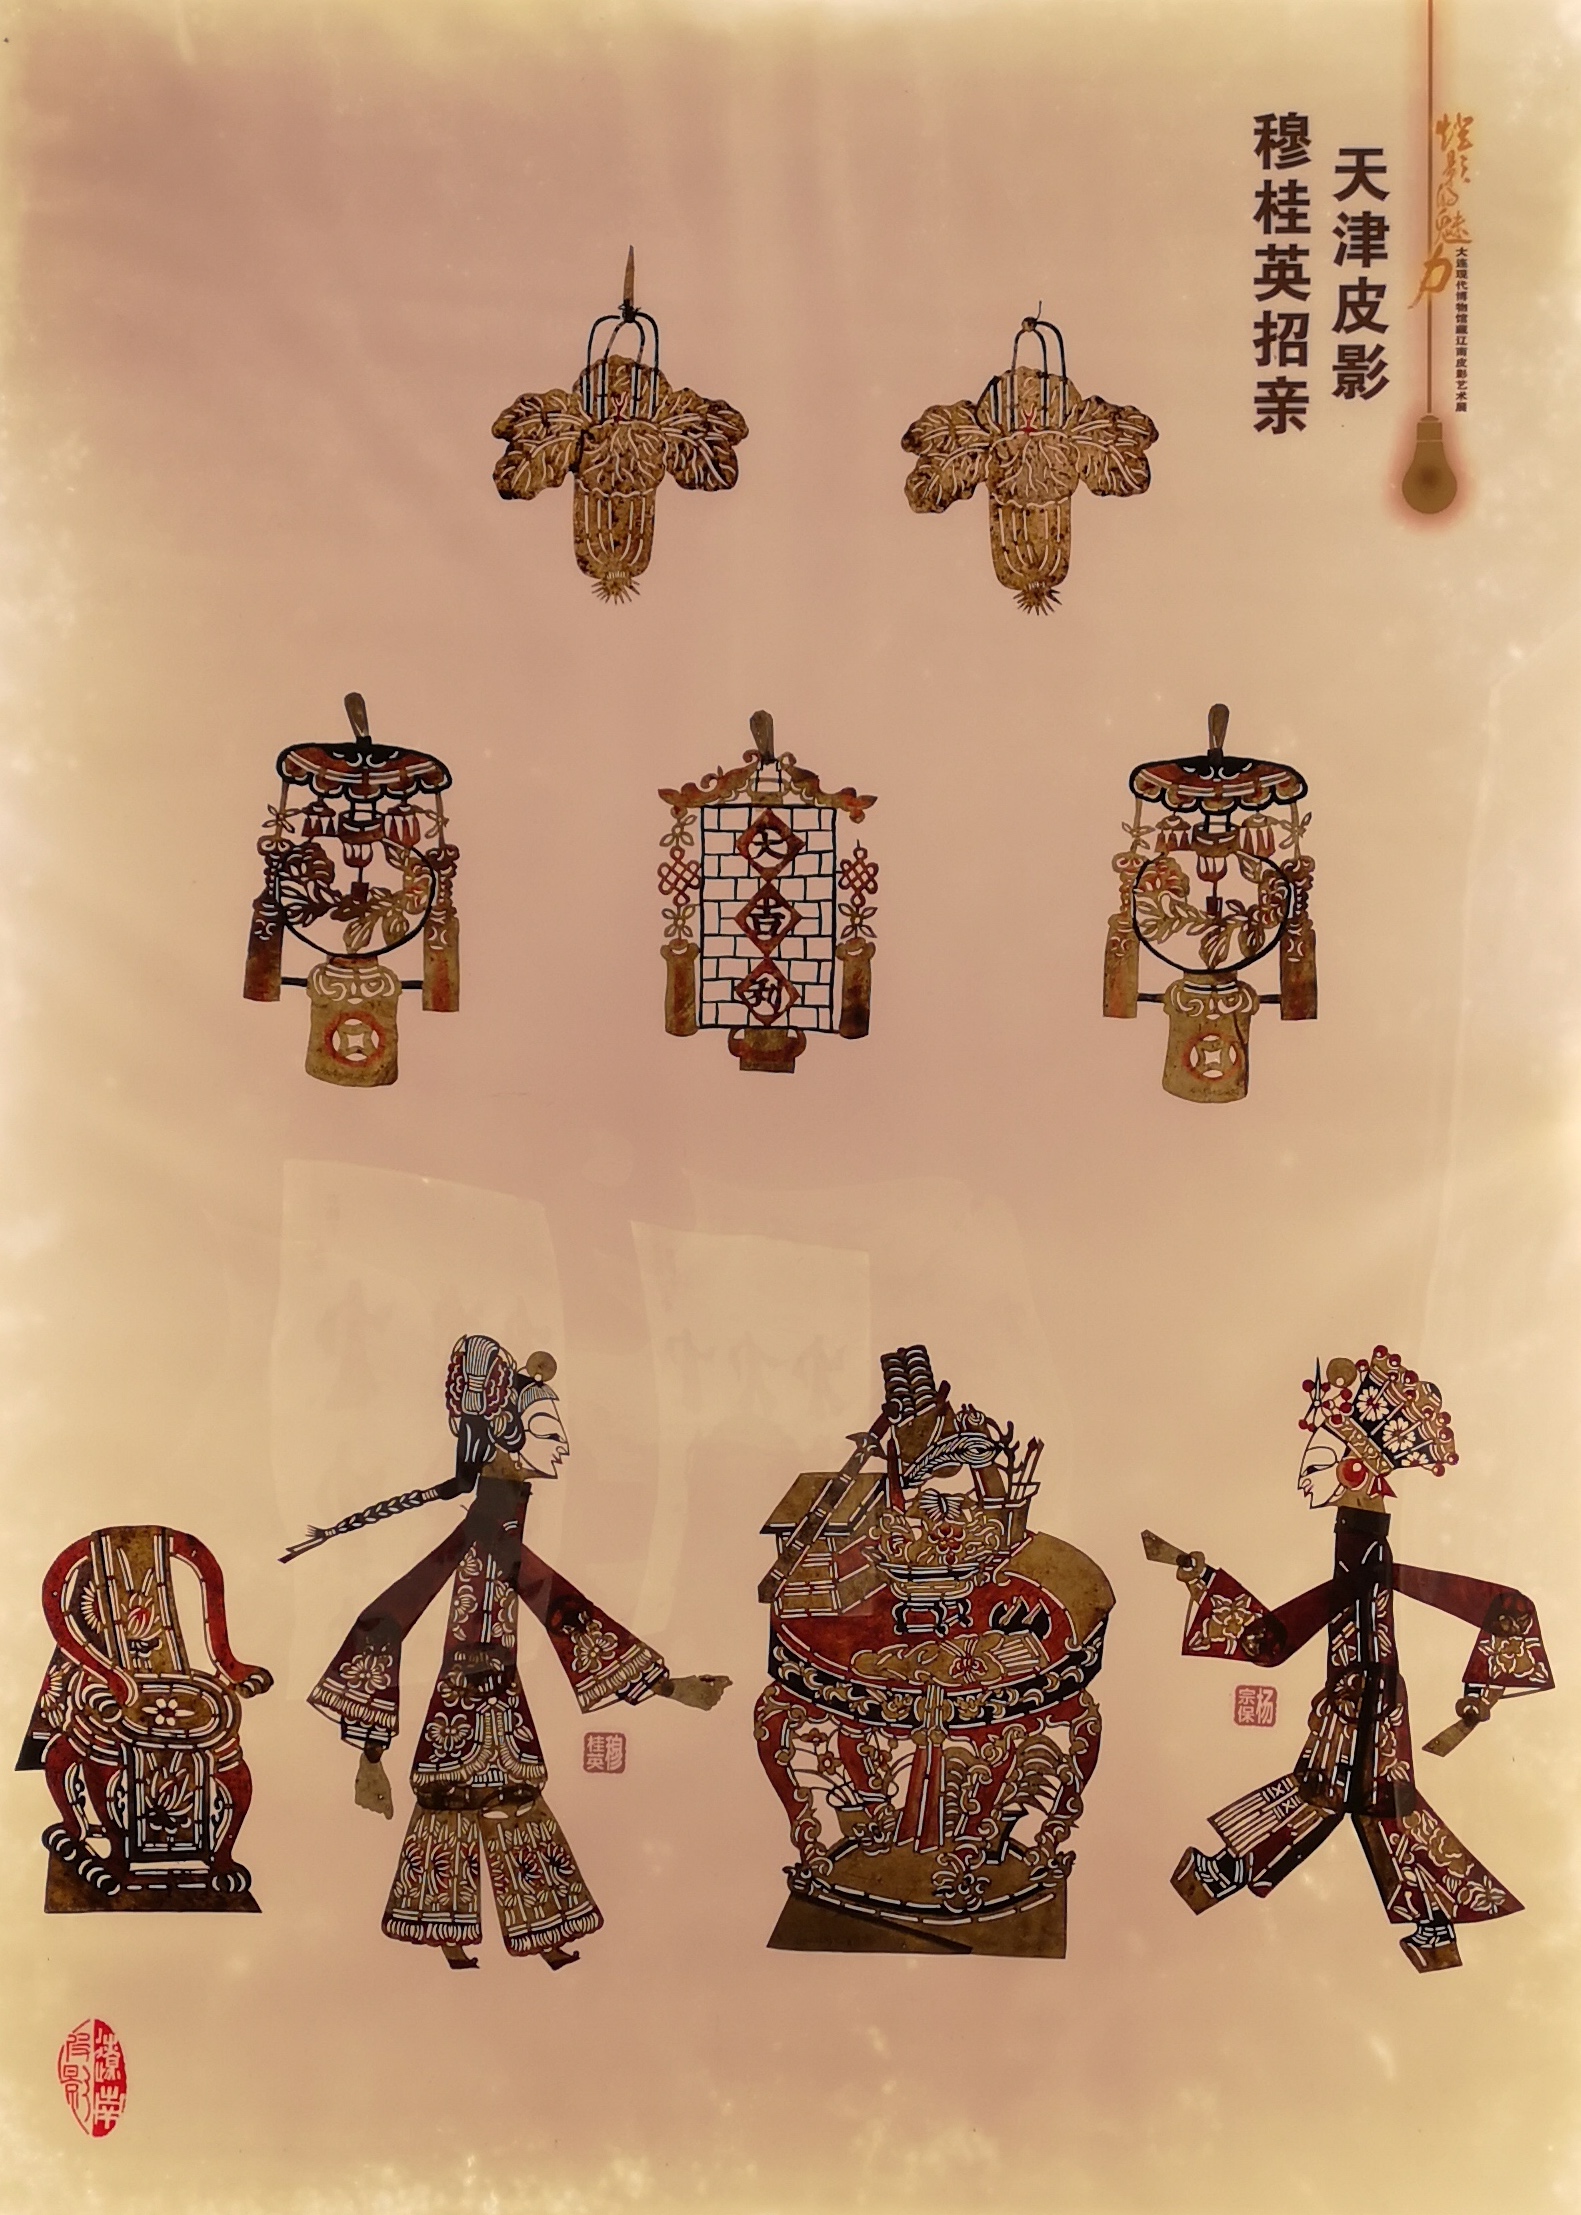 中国古老传统的民间艺术---皮影戏_传统文化_中国古风图片大全_古风家